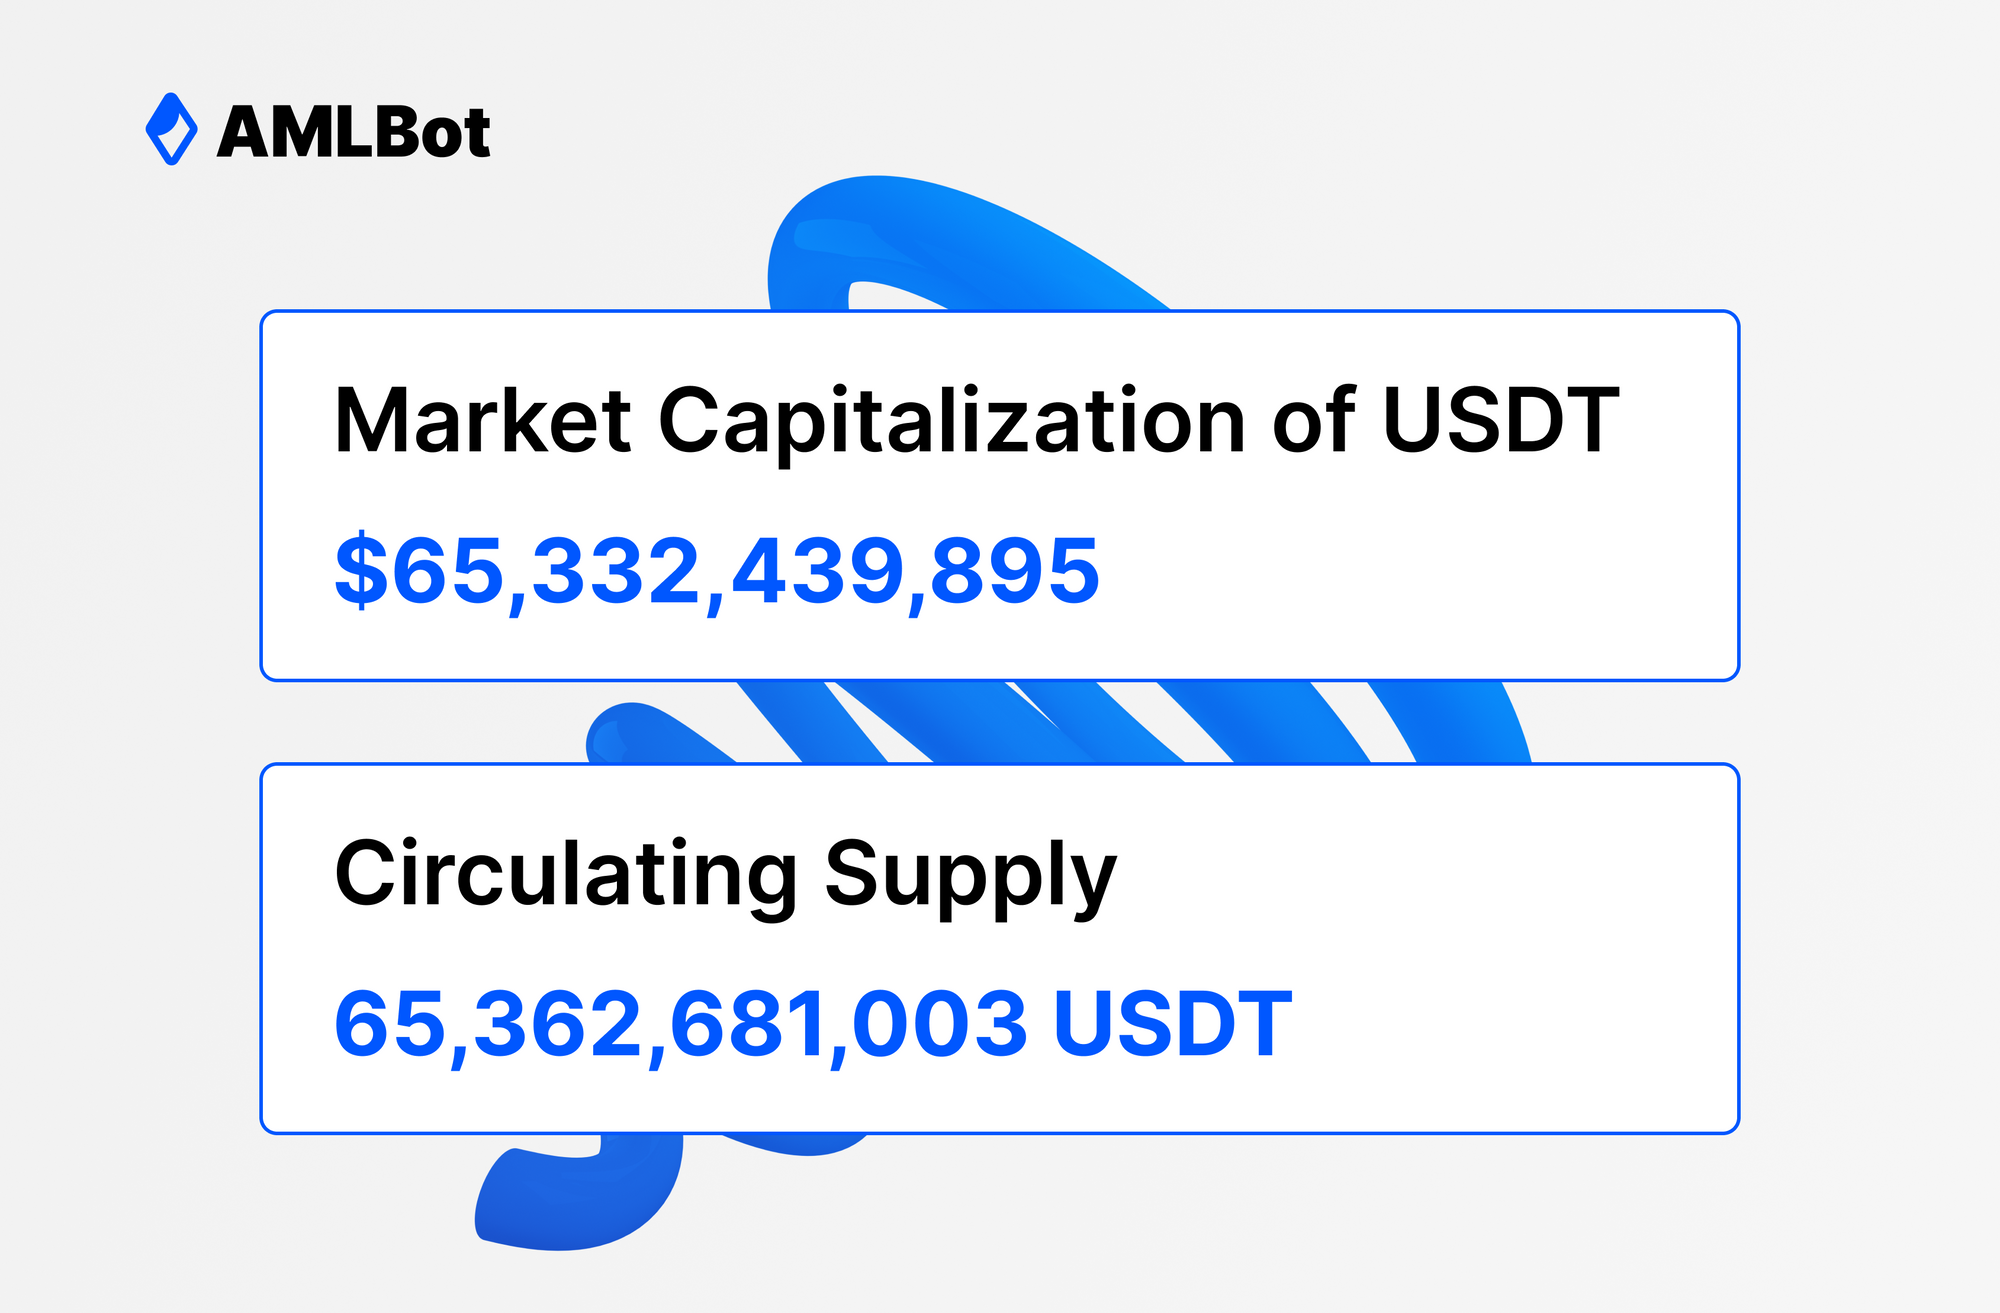 market capitalization of USDT